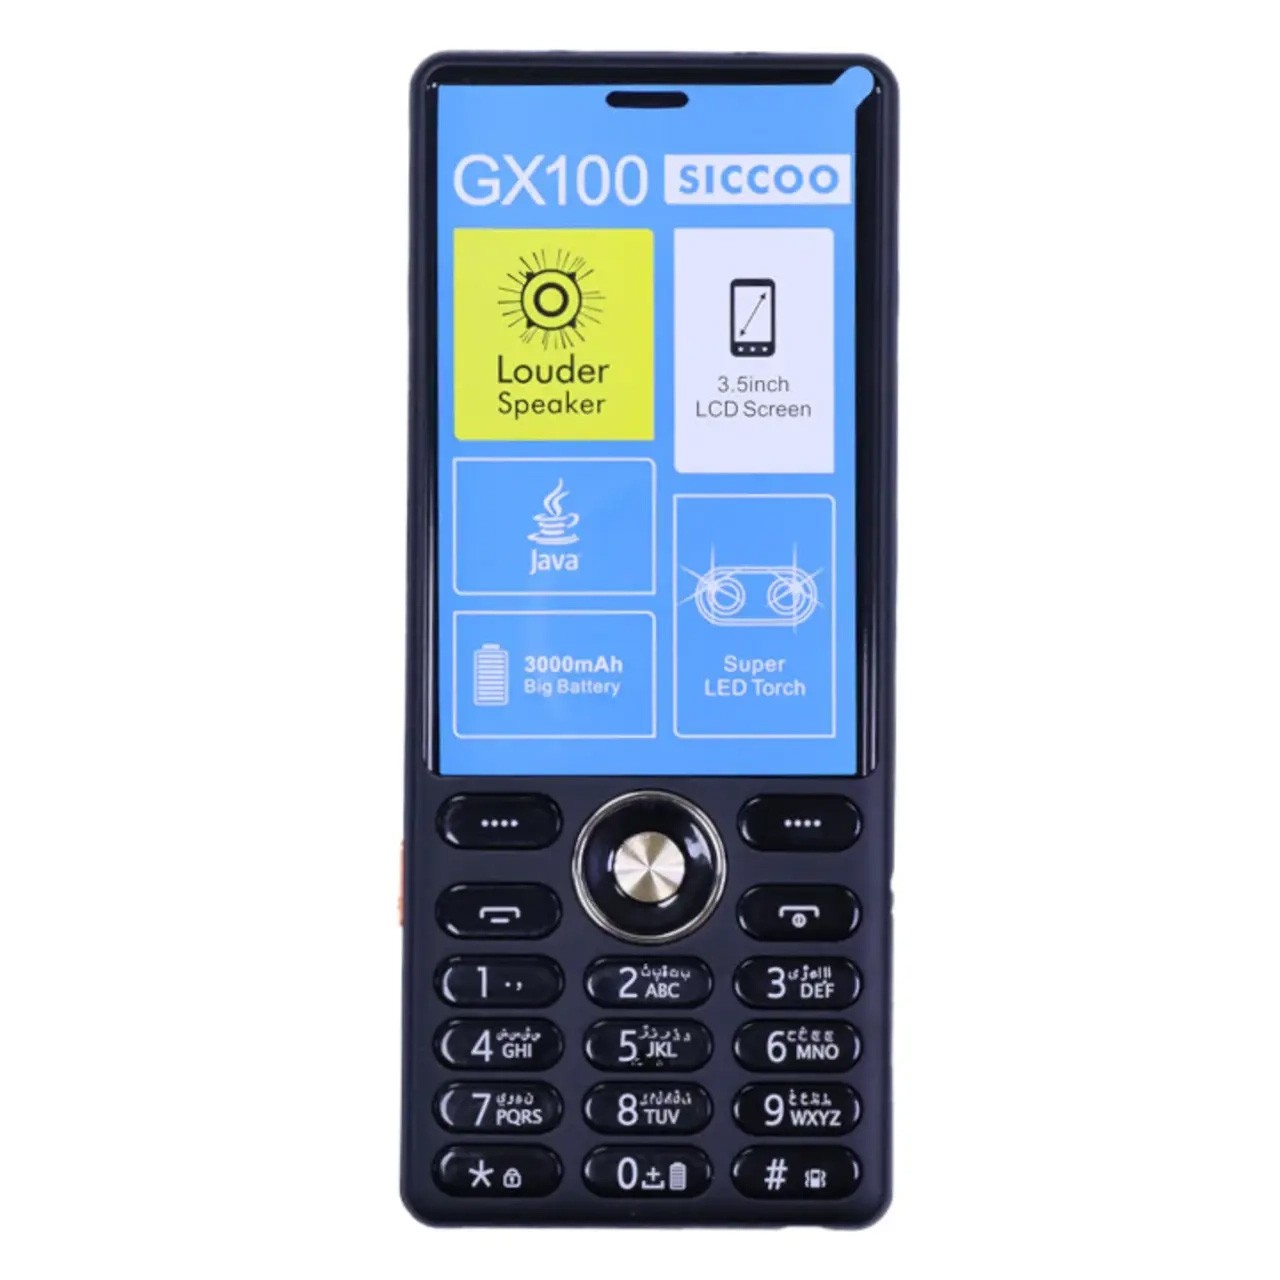 گوشی موبایل سیکو SICCOO GX100 دو سیم کارت ظرفیت 128 مگابایت و رم 128 مگابایت